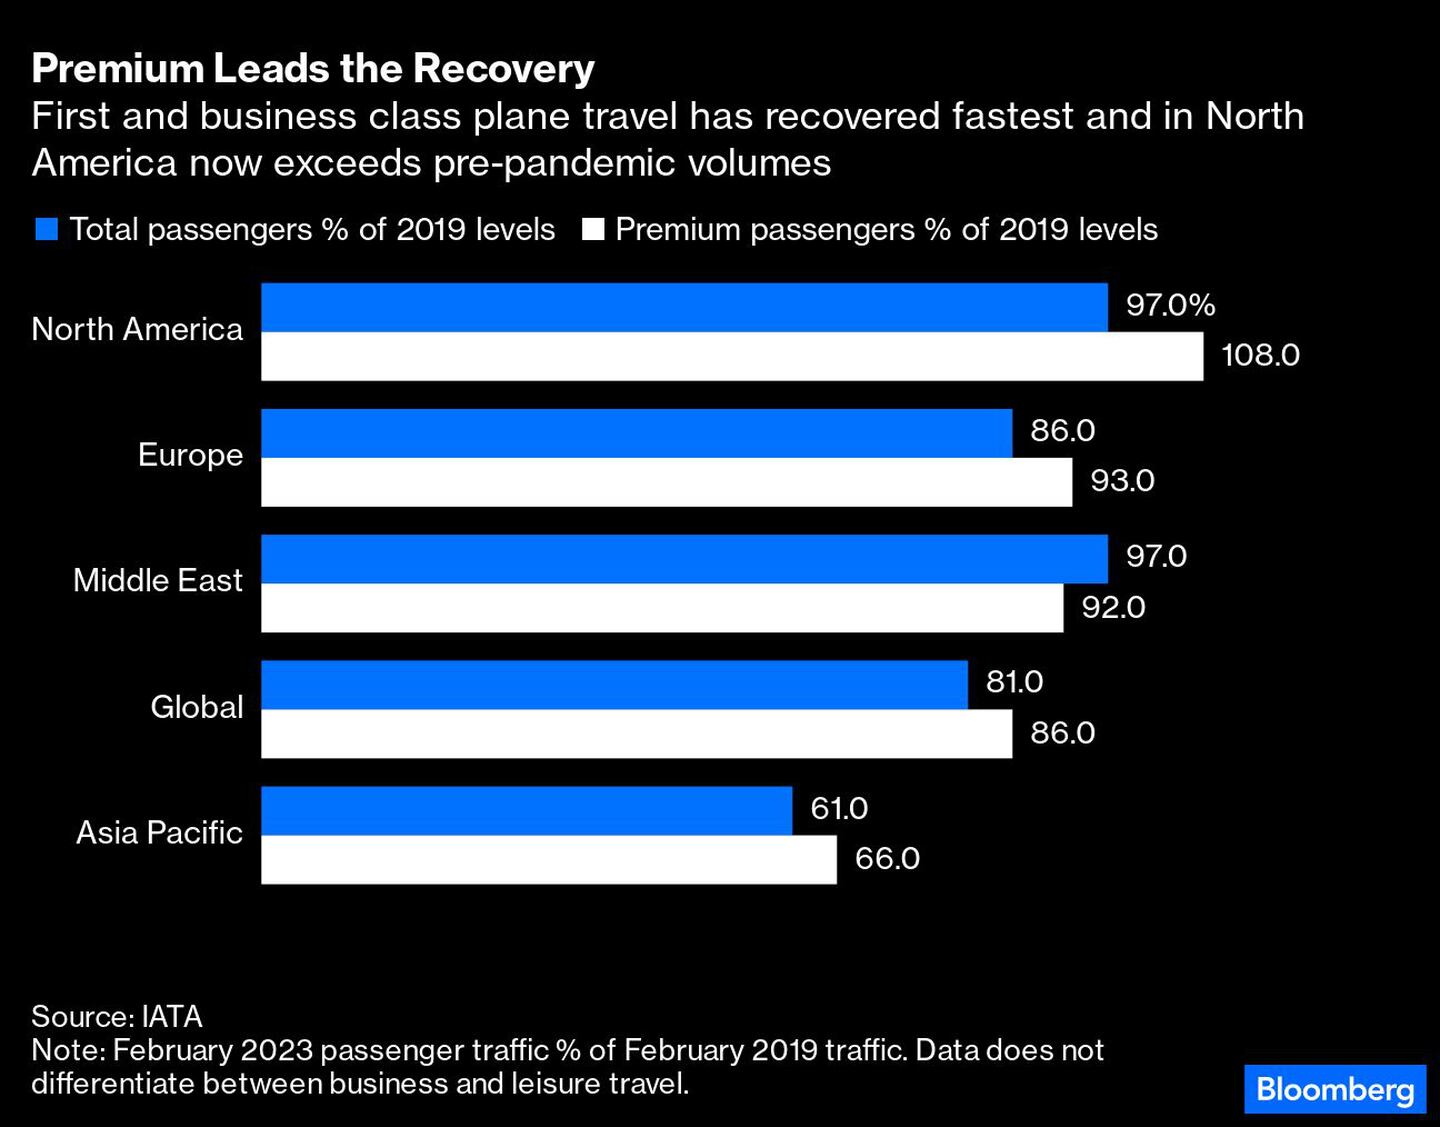 Los viajes en avión en primera clase y business son los que más rápido se han recuperado y en Norteamérica superan ya los volúmenes anteriores a la pandemia.dfd